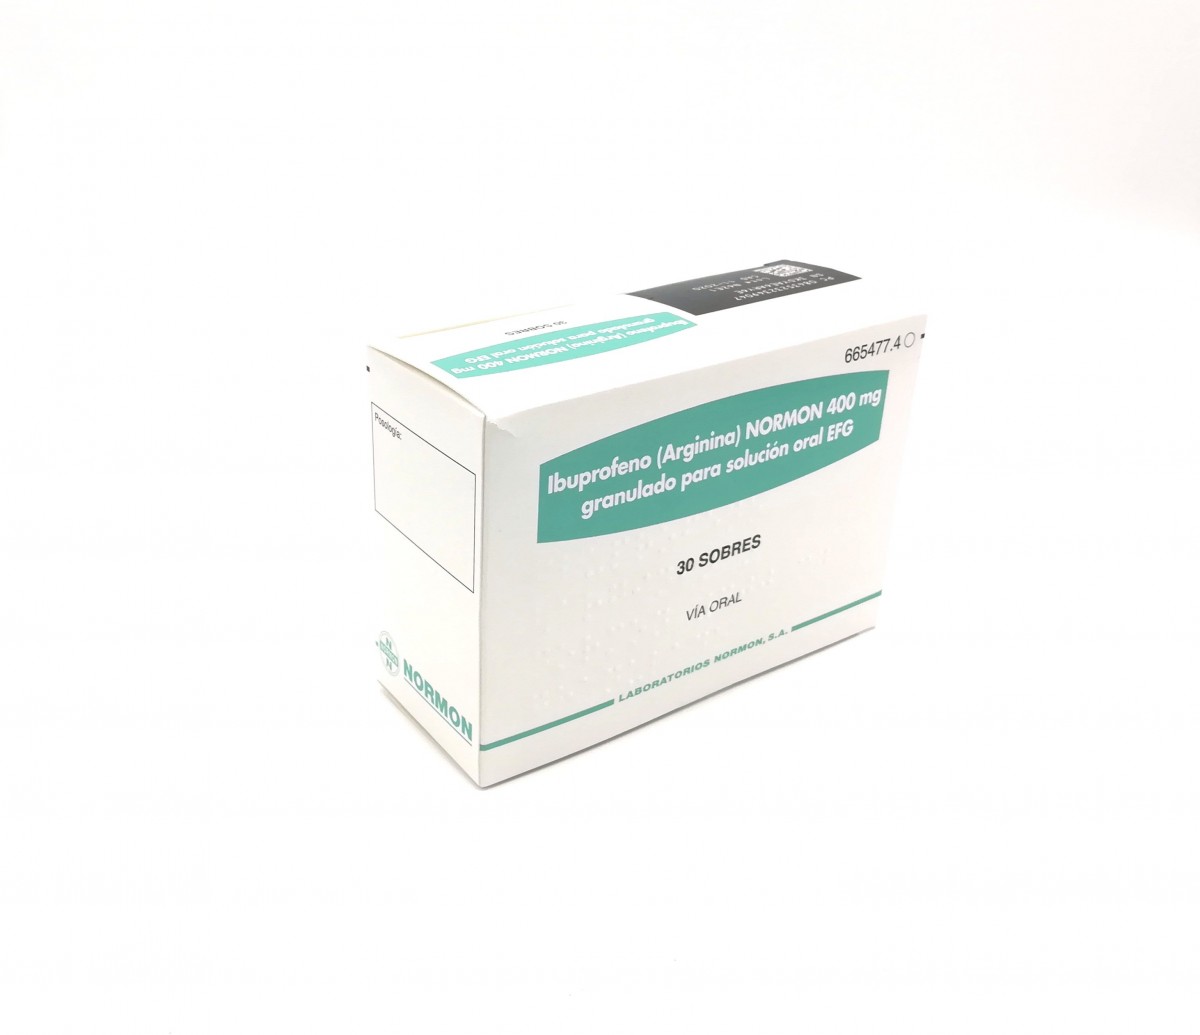 IBUPROFENO (ARGININA) NORMON 400 mg GRANULADO PARA SOLUCION ORAL EFG , 30 sobres fotografía del envase.